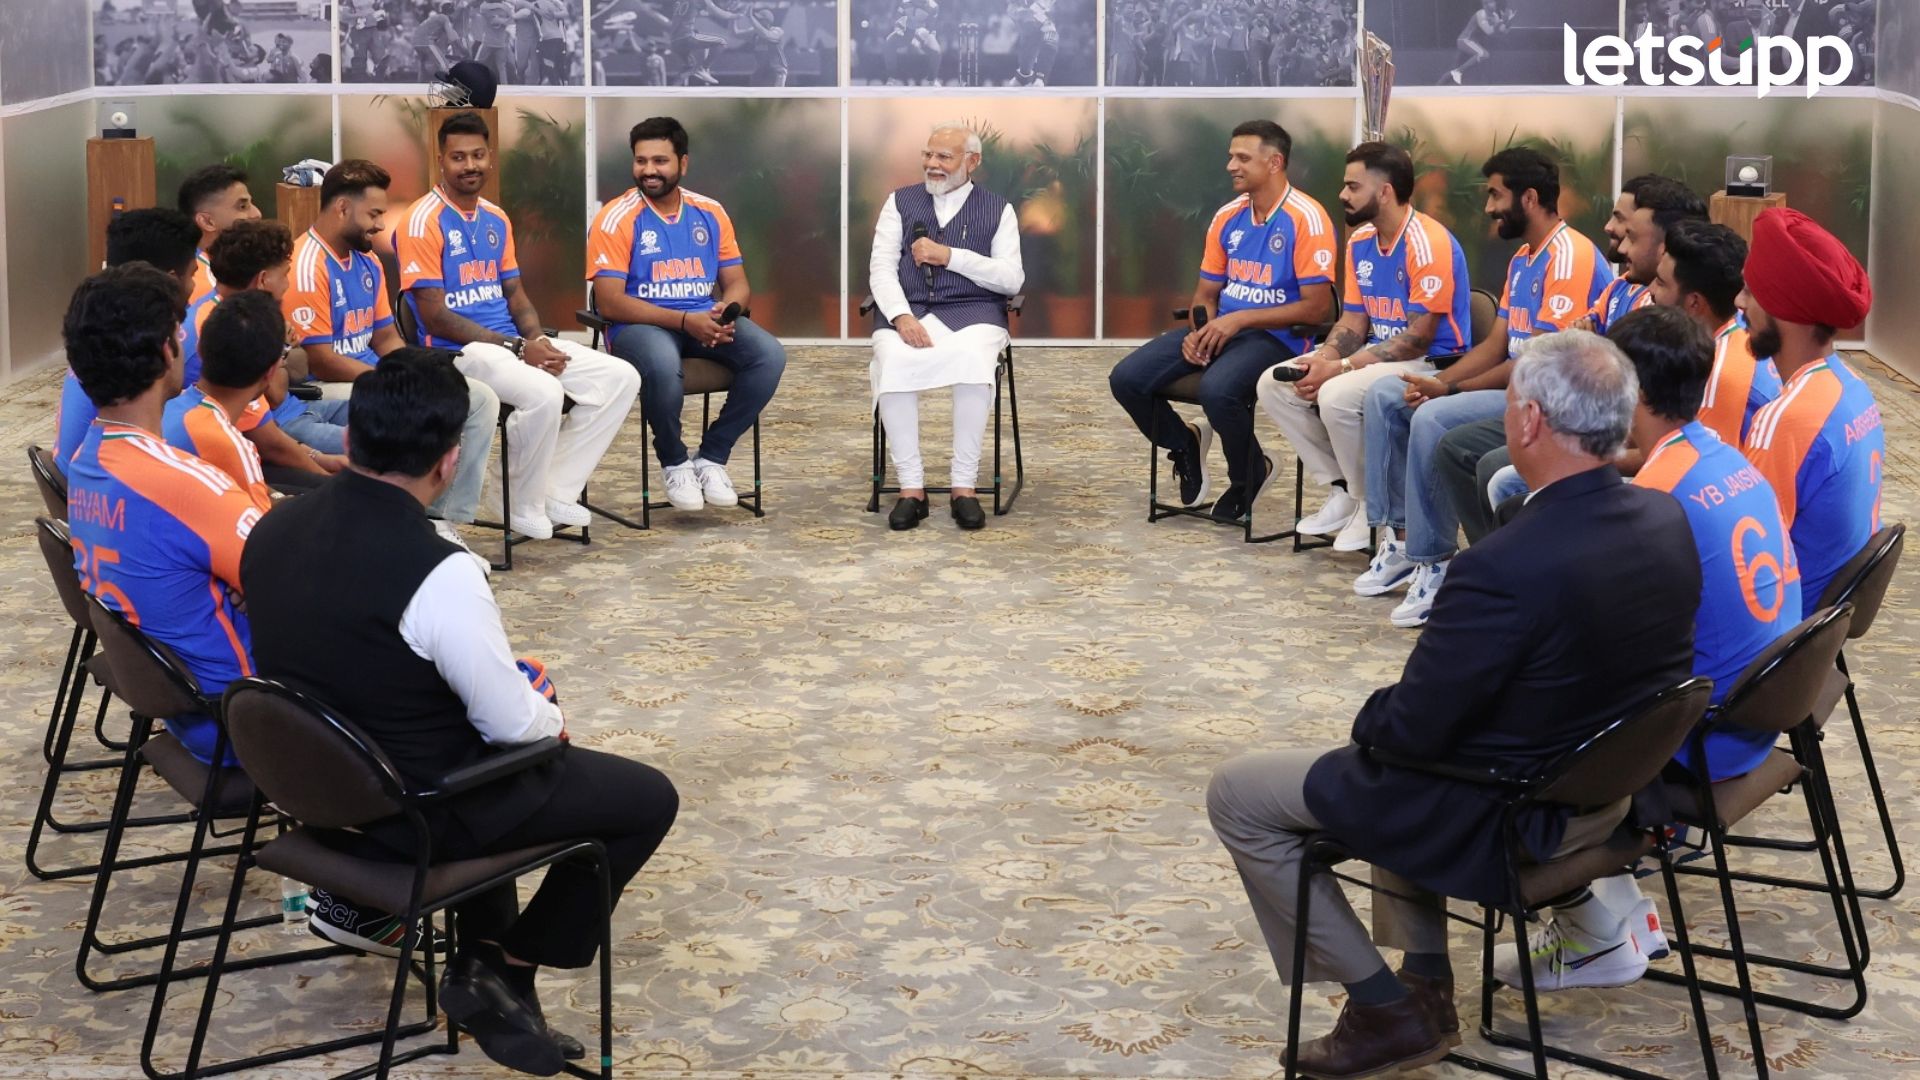 विश्वविजेत्या टीम इंडियाला मोदींनी काय काय विचारलं? कुणी काय उत्तर दिलं?; बघा खास व्हिडिओ